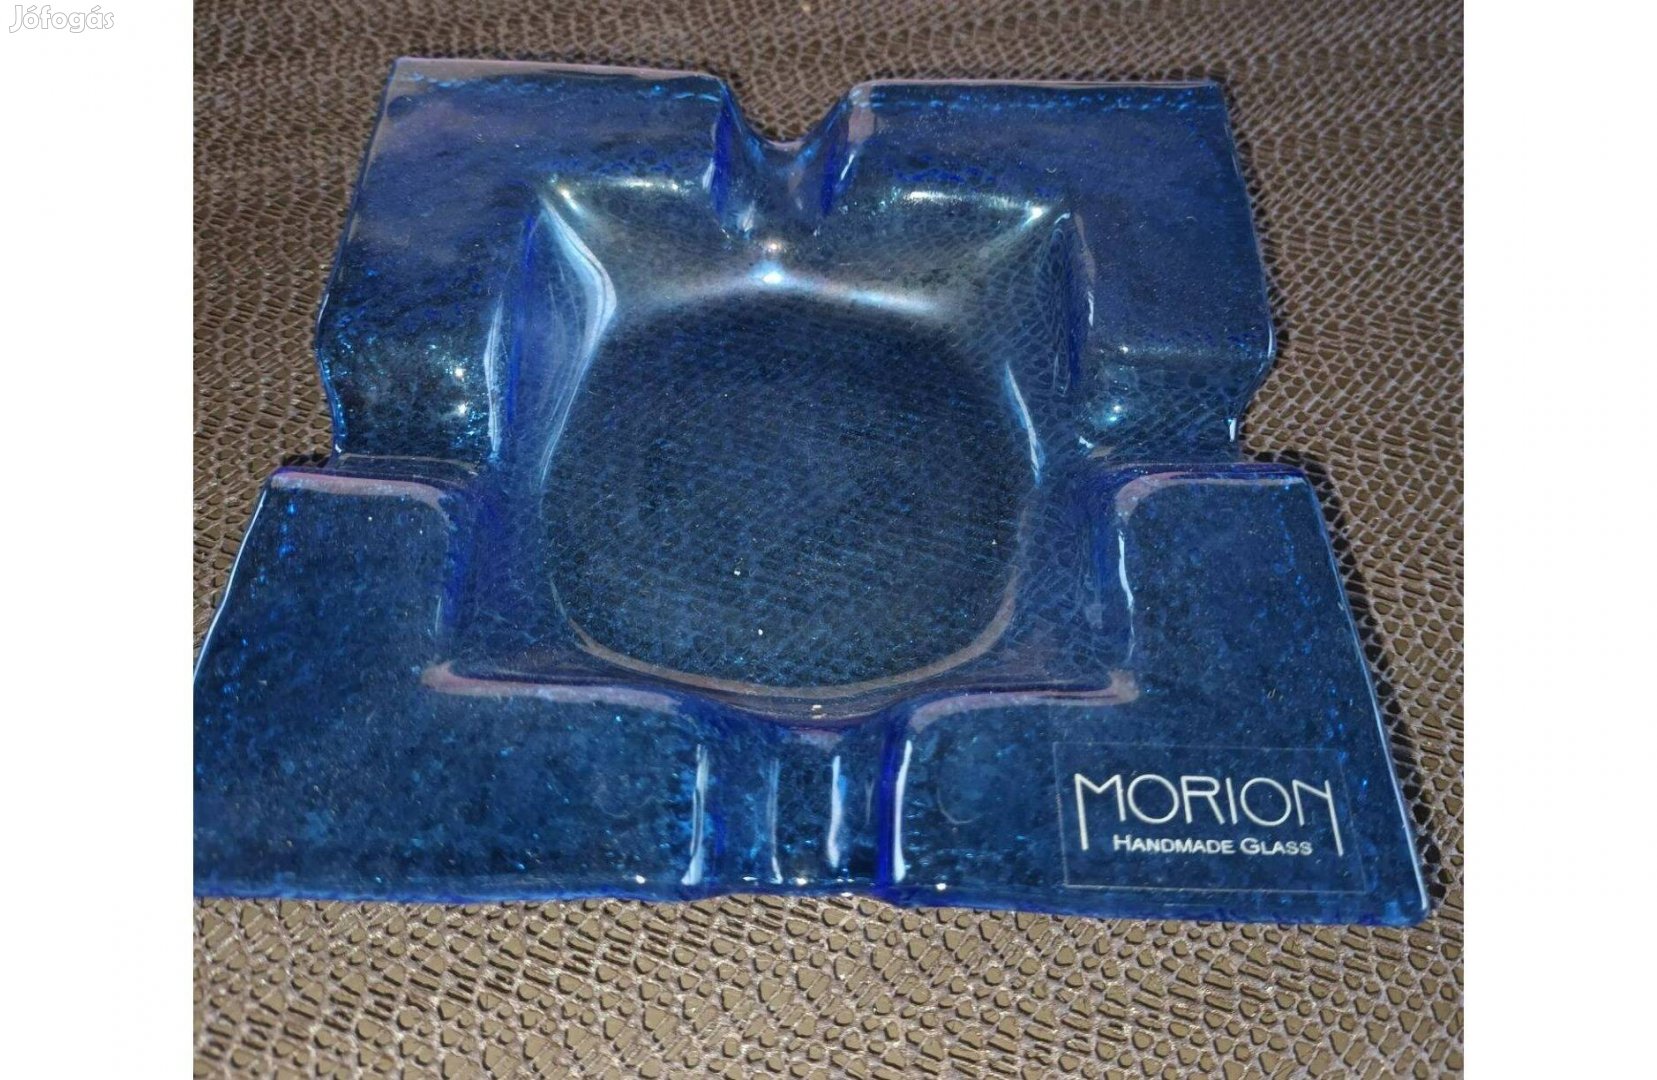 Morion kézzel készült üveg hamutál, kék